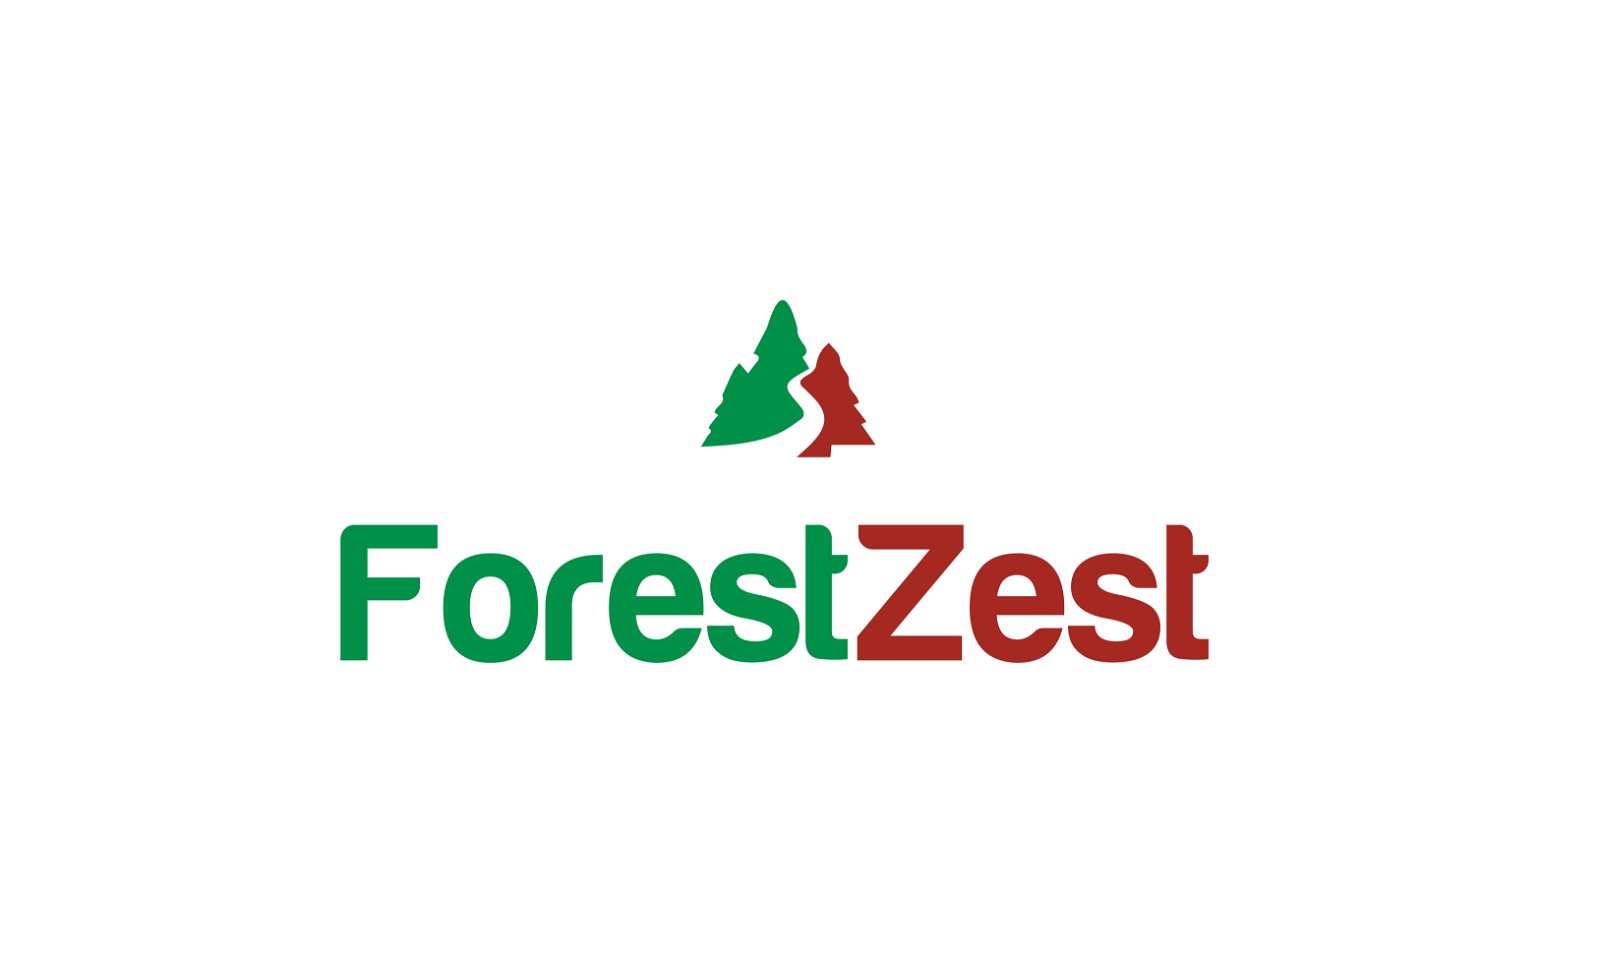 ForestZest.com - Creative brandable domain for sale